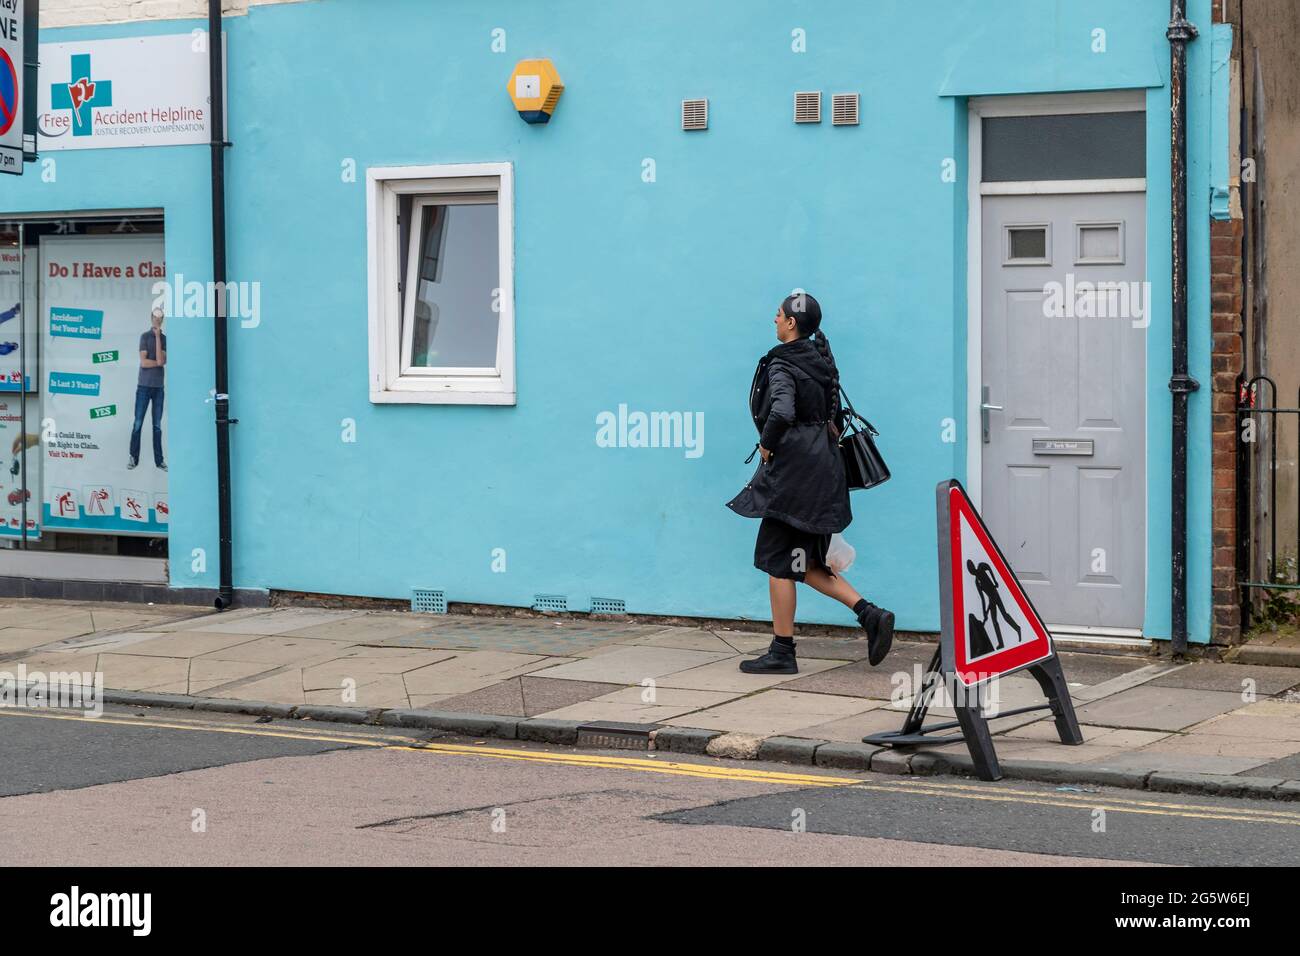 Femme portant un masque facial en marchant de droite à gauche dans la rue de St Edmund Northampton, Engalnd, Royaume-Uni Banque D'Images